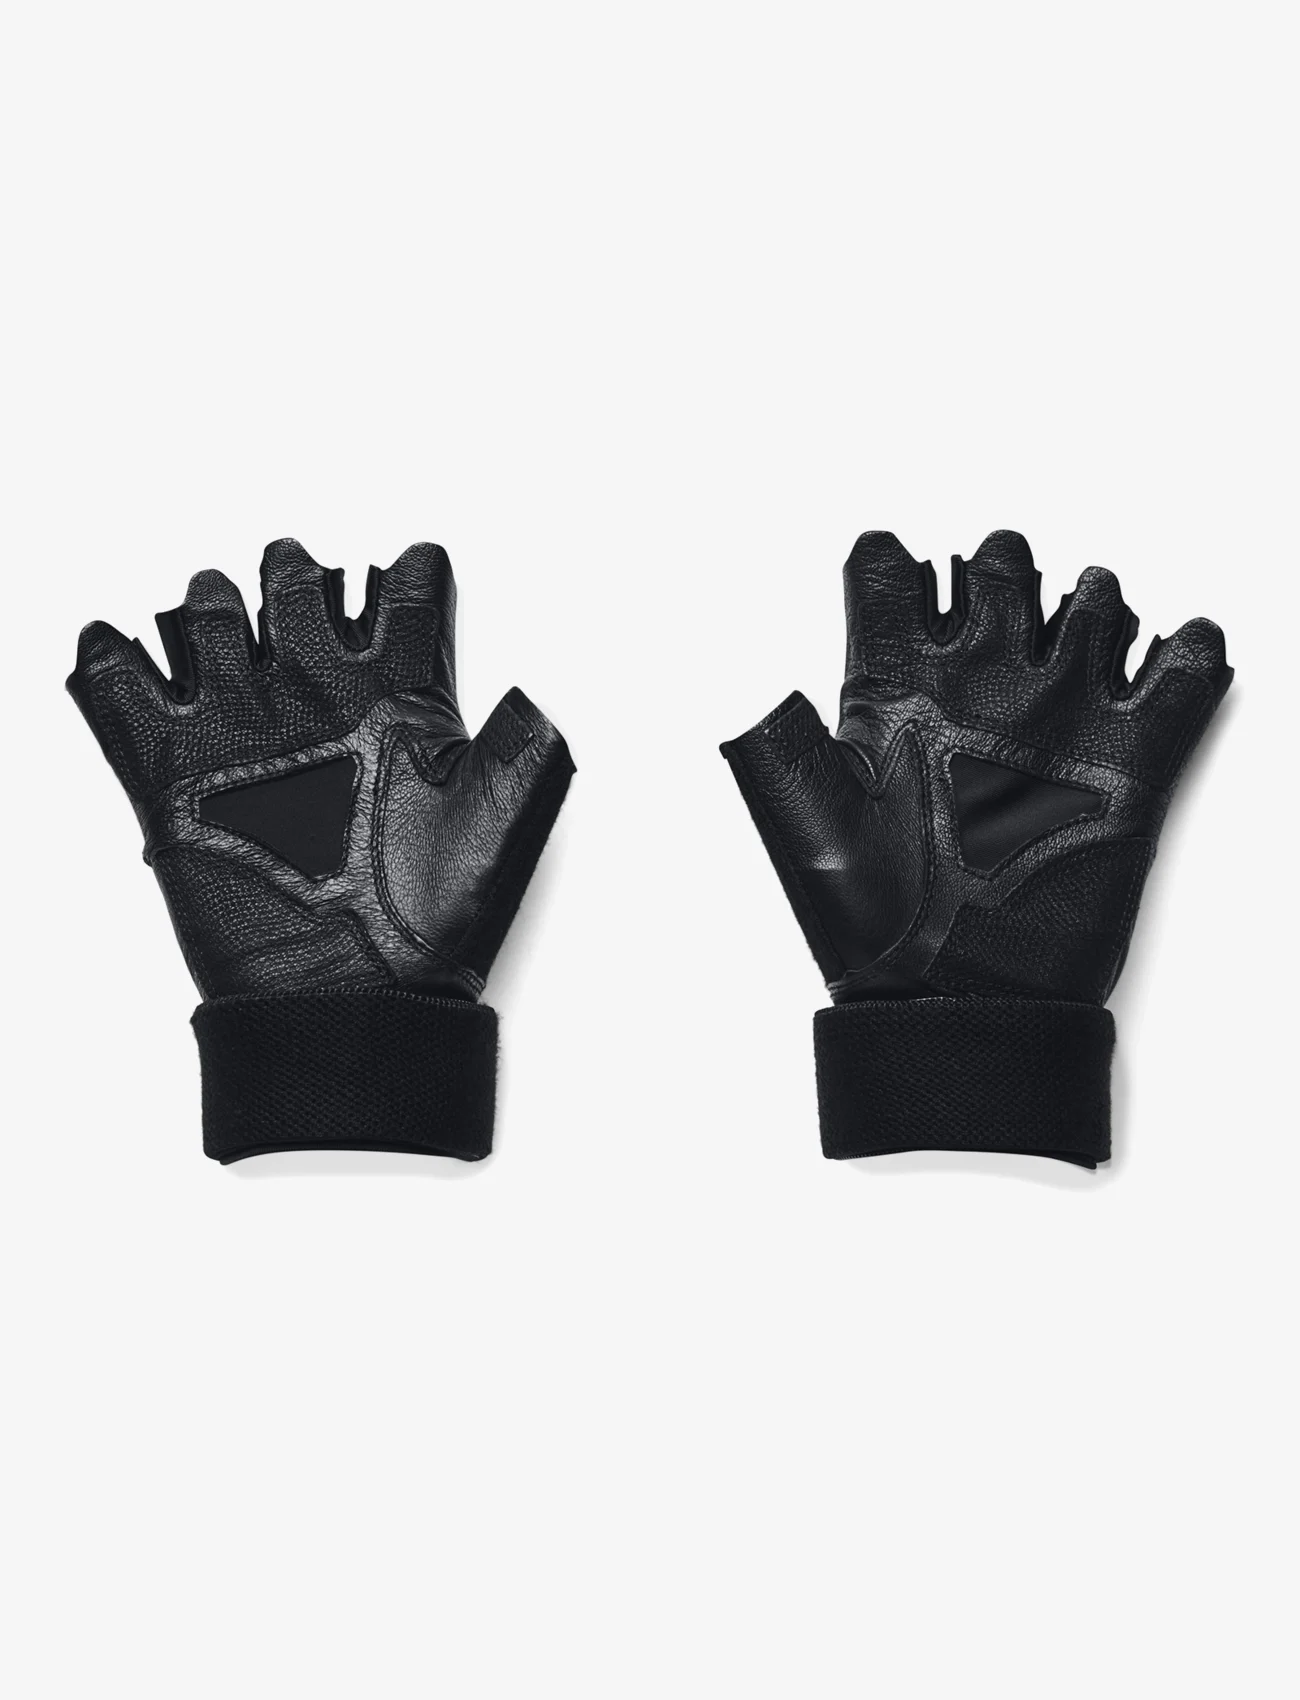 Under Armour - M's Weightlifting Gloves - men - black - 1